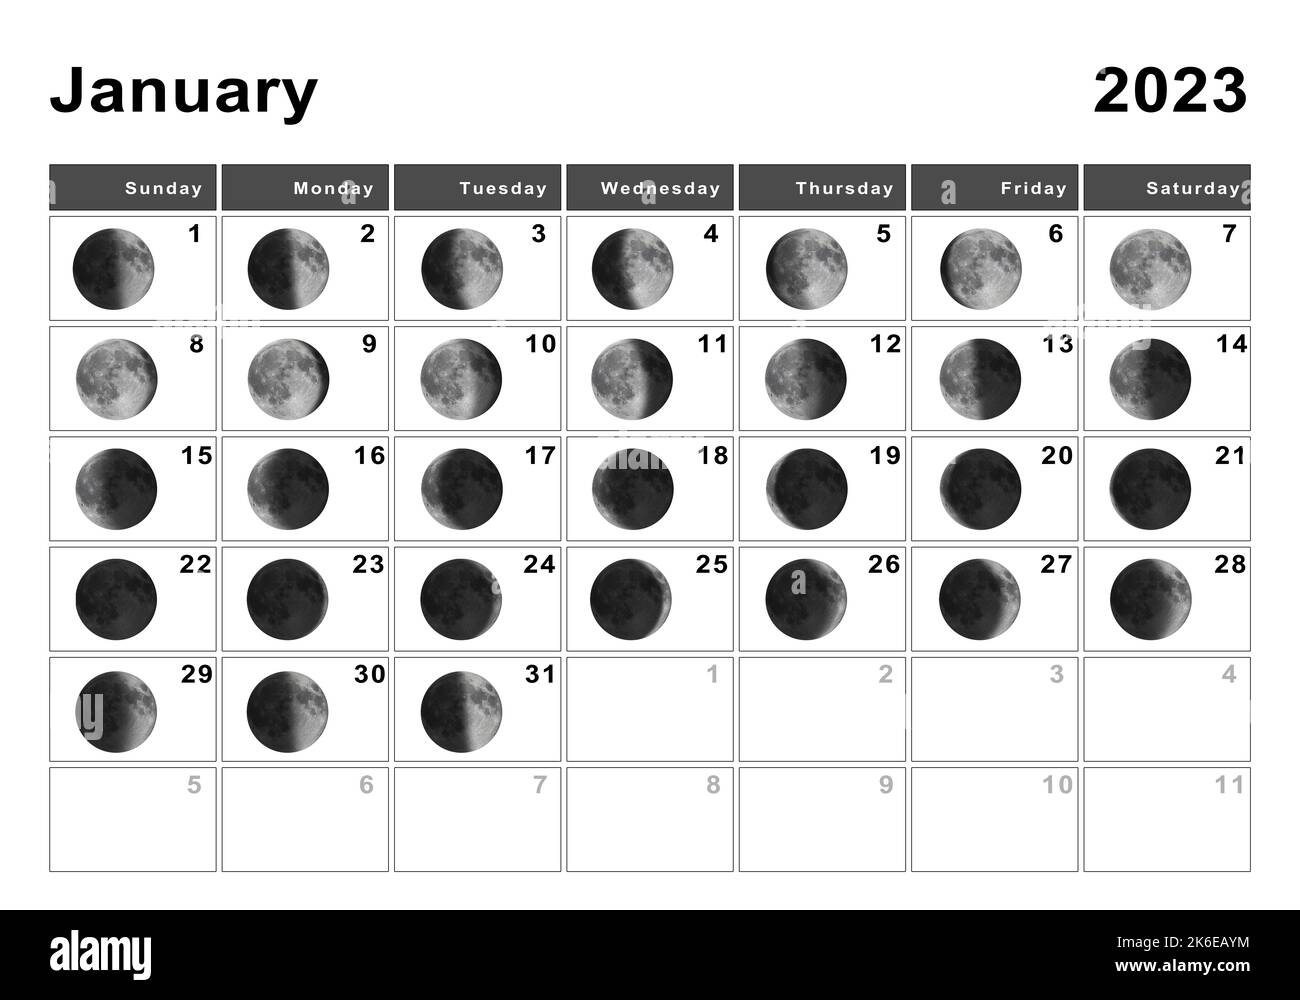 Лунный календарь на апрель 2024г микрокосмос. Фазы Луны. Новолуние 2023г. Циклы Луны 2023. Календарь Луны на 2023 год.